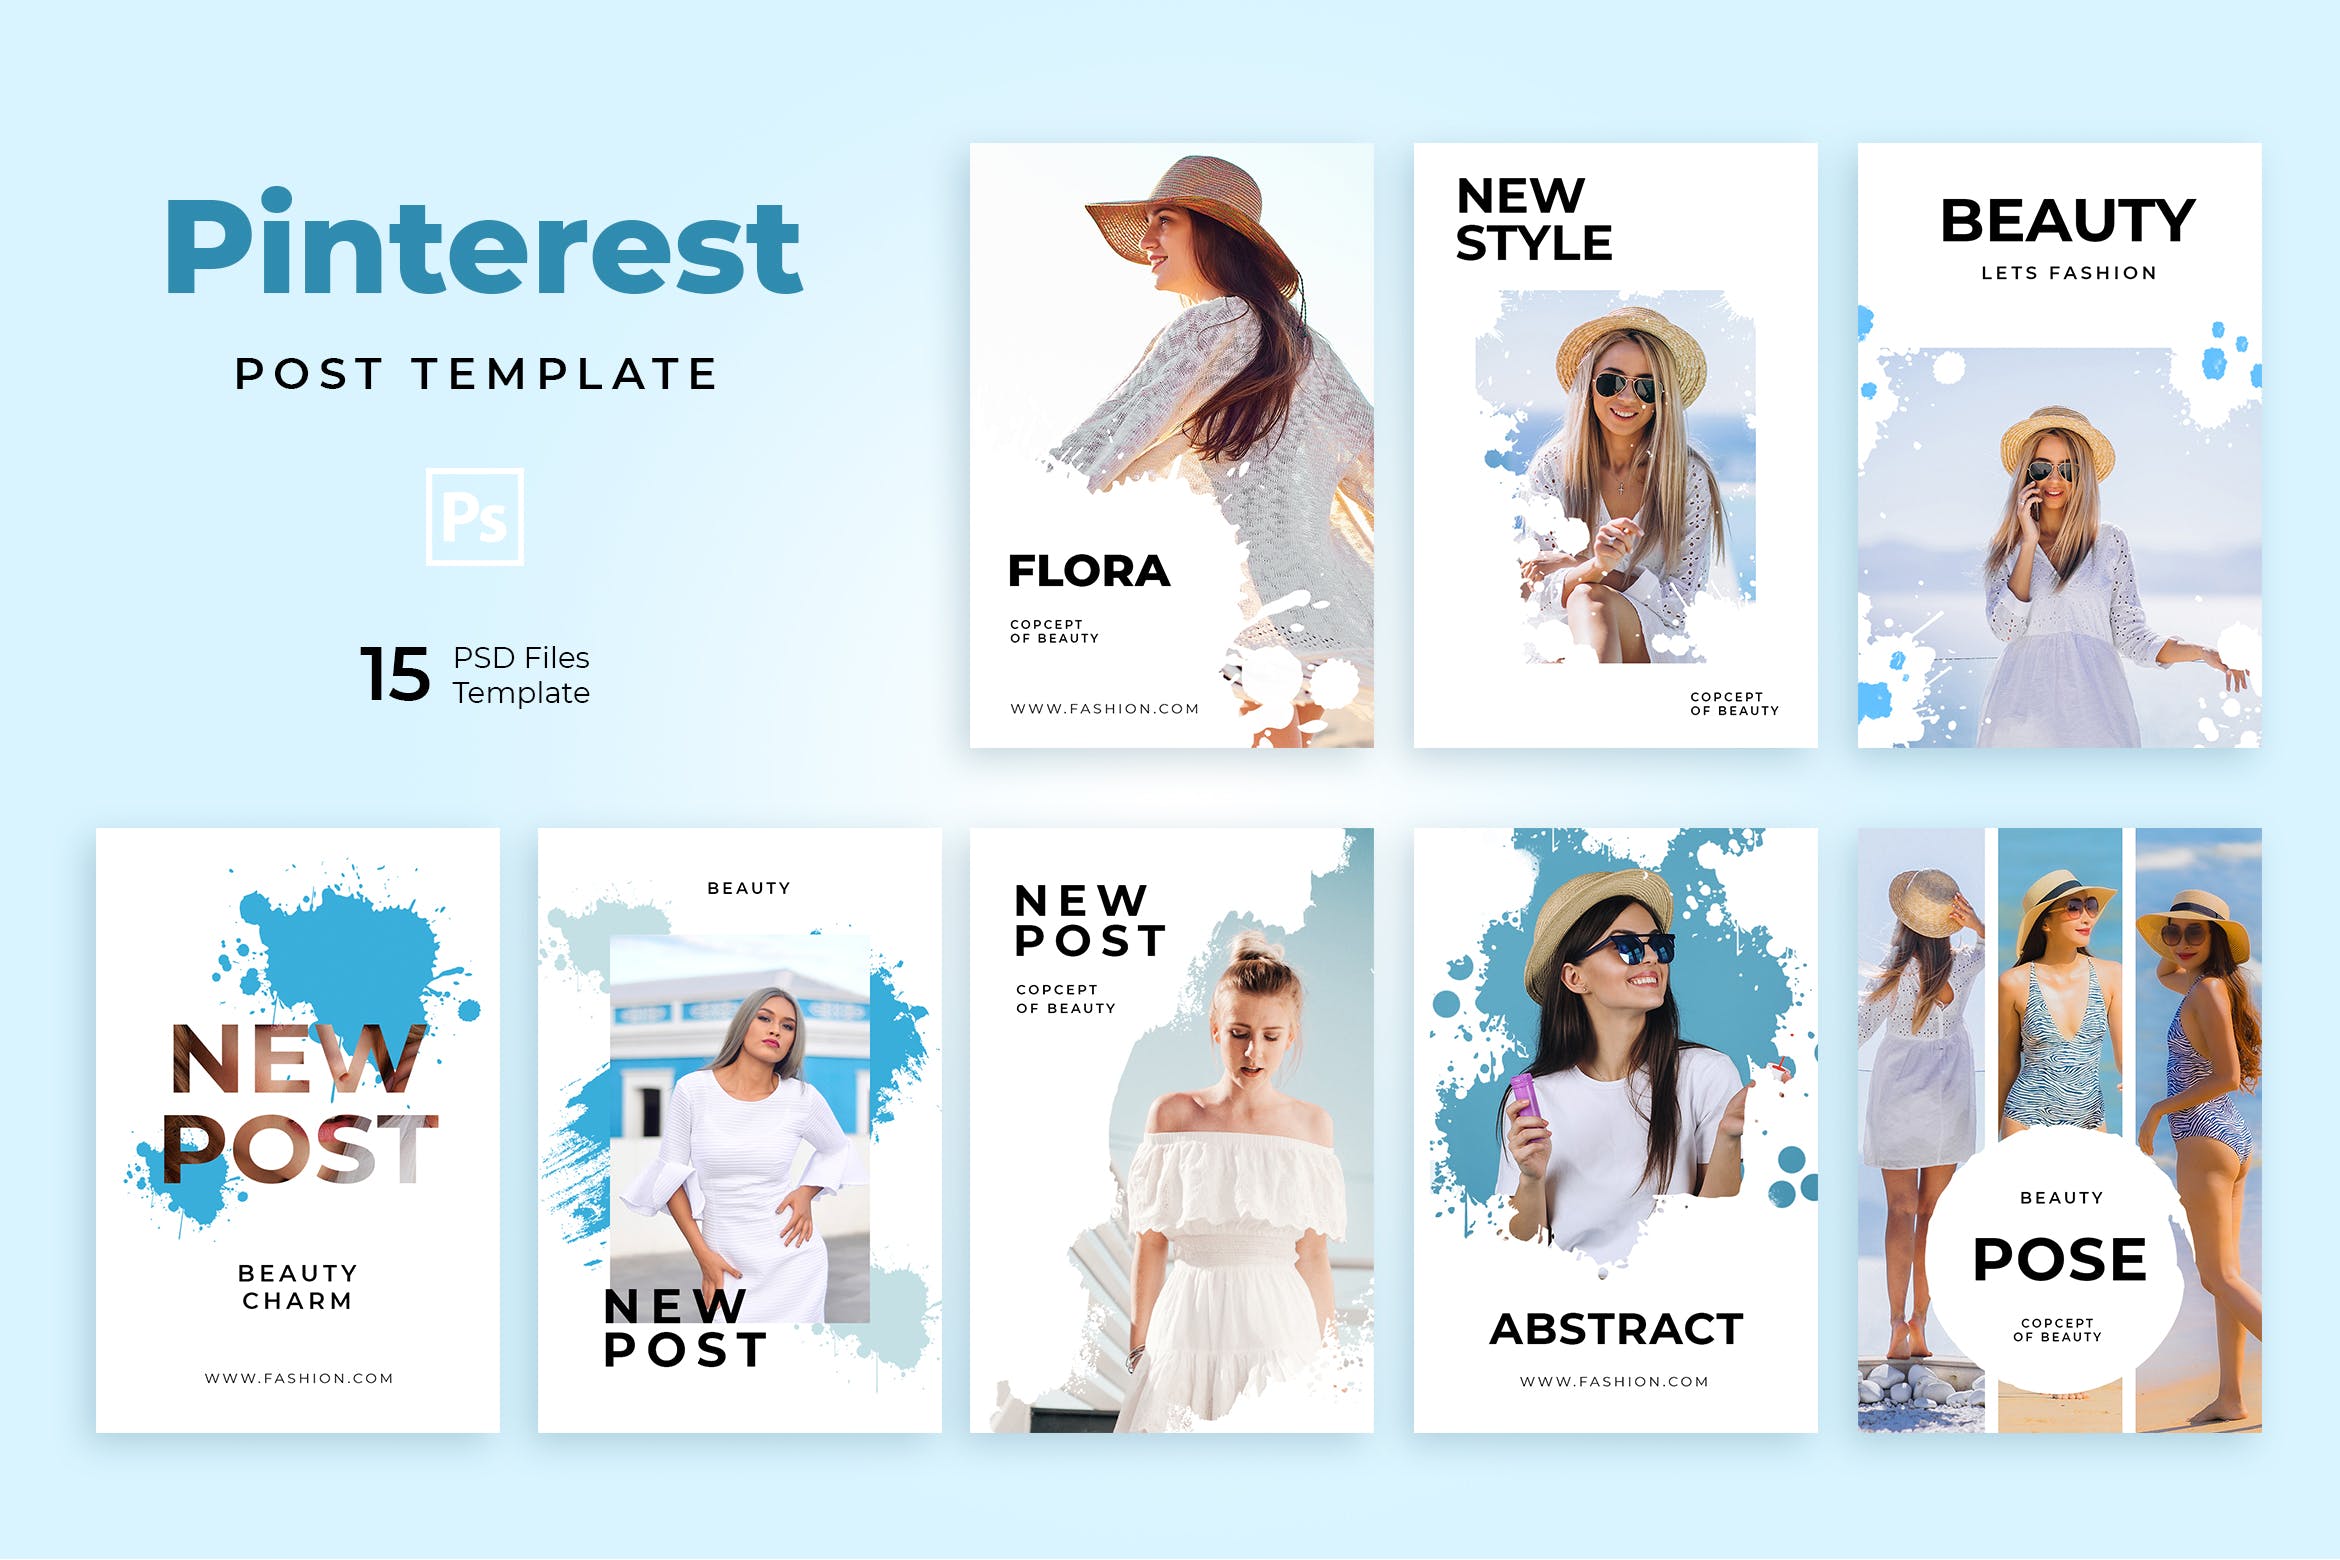 时尚品牌社交营销推广Pinterest模板第一素材精选素材 Beauty Pinterest Templates插图